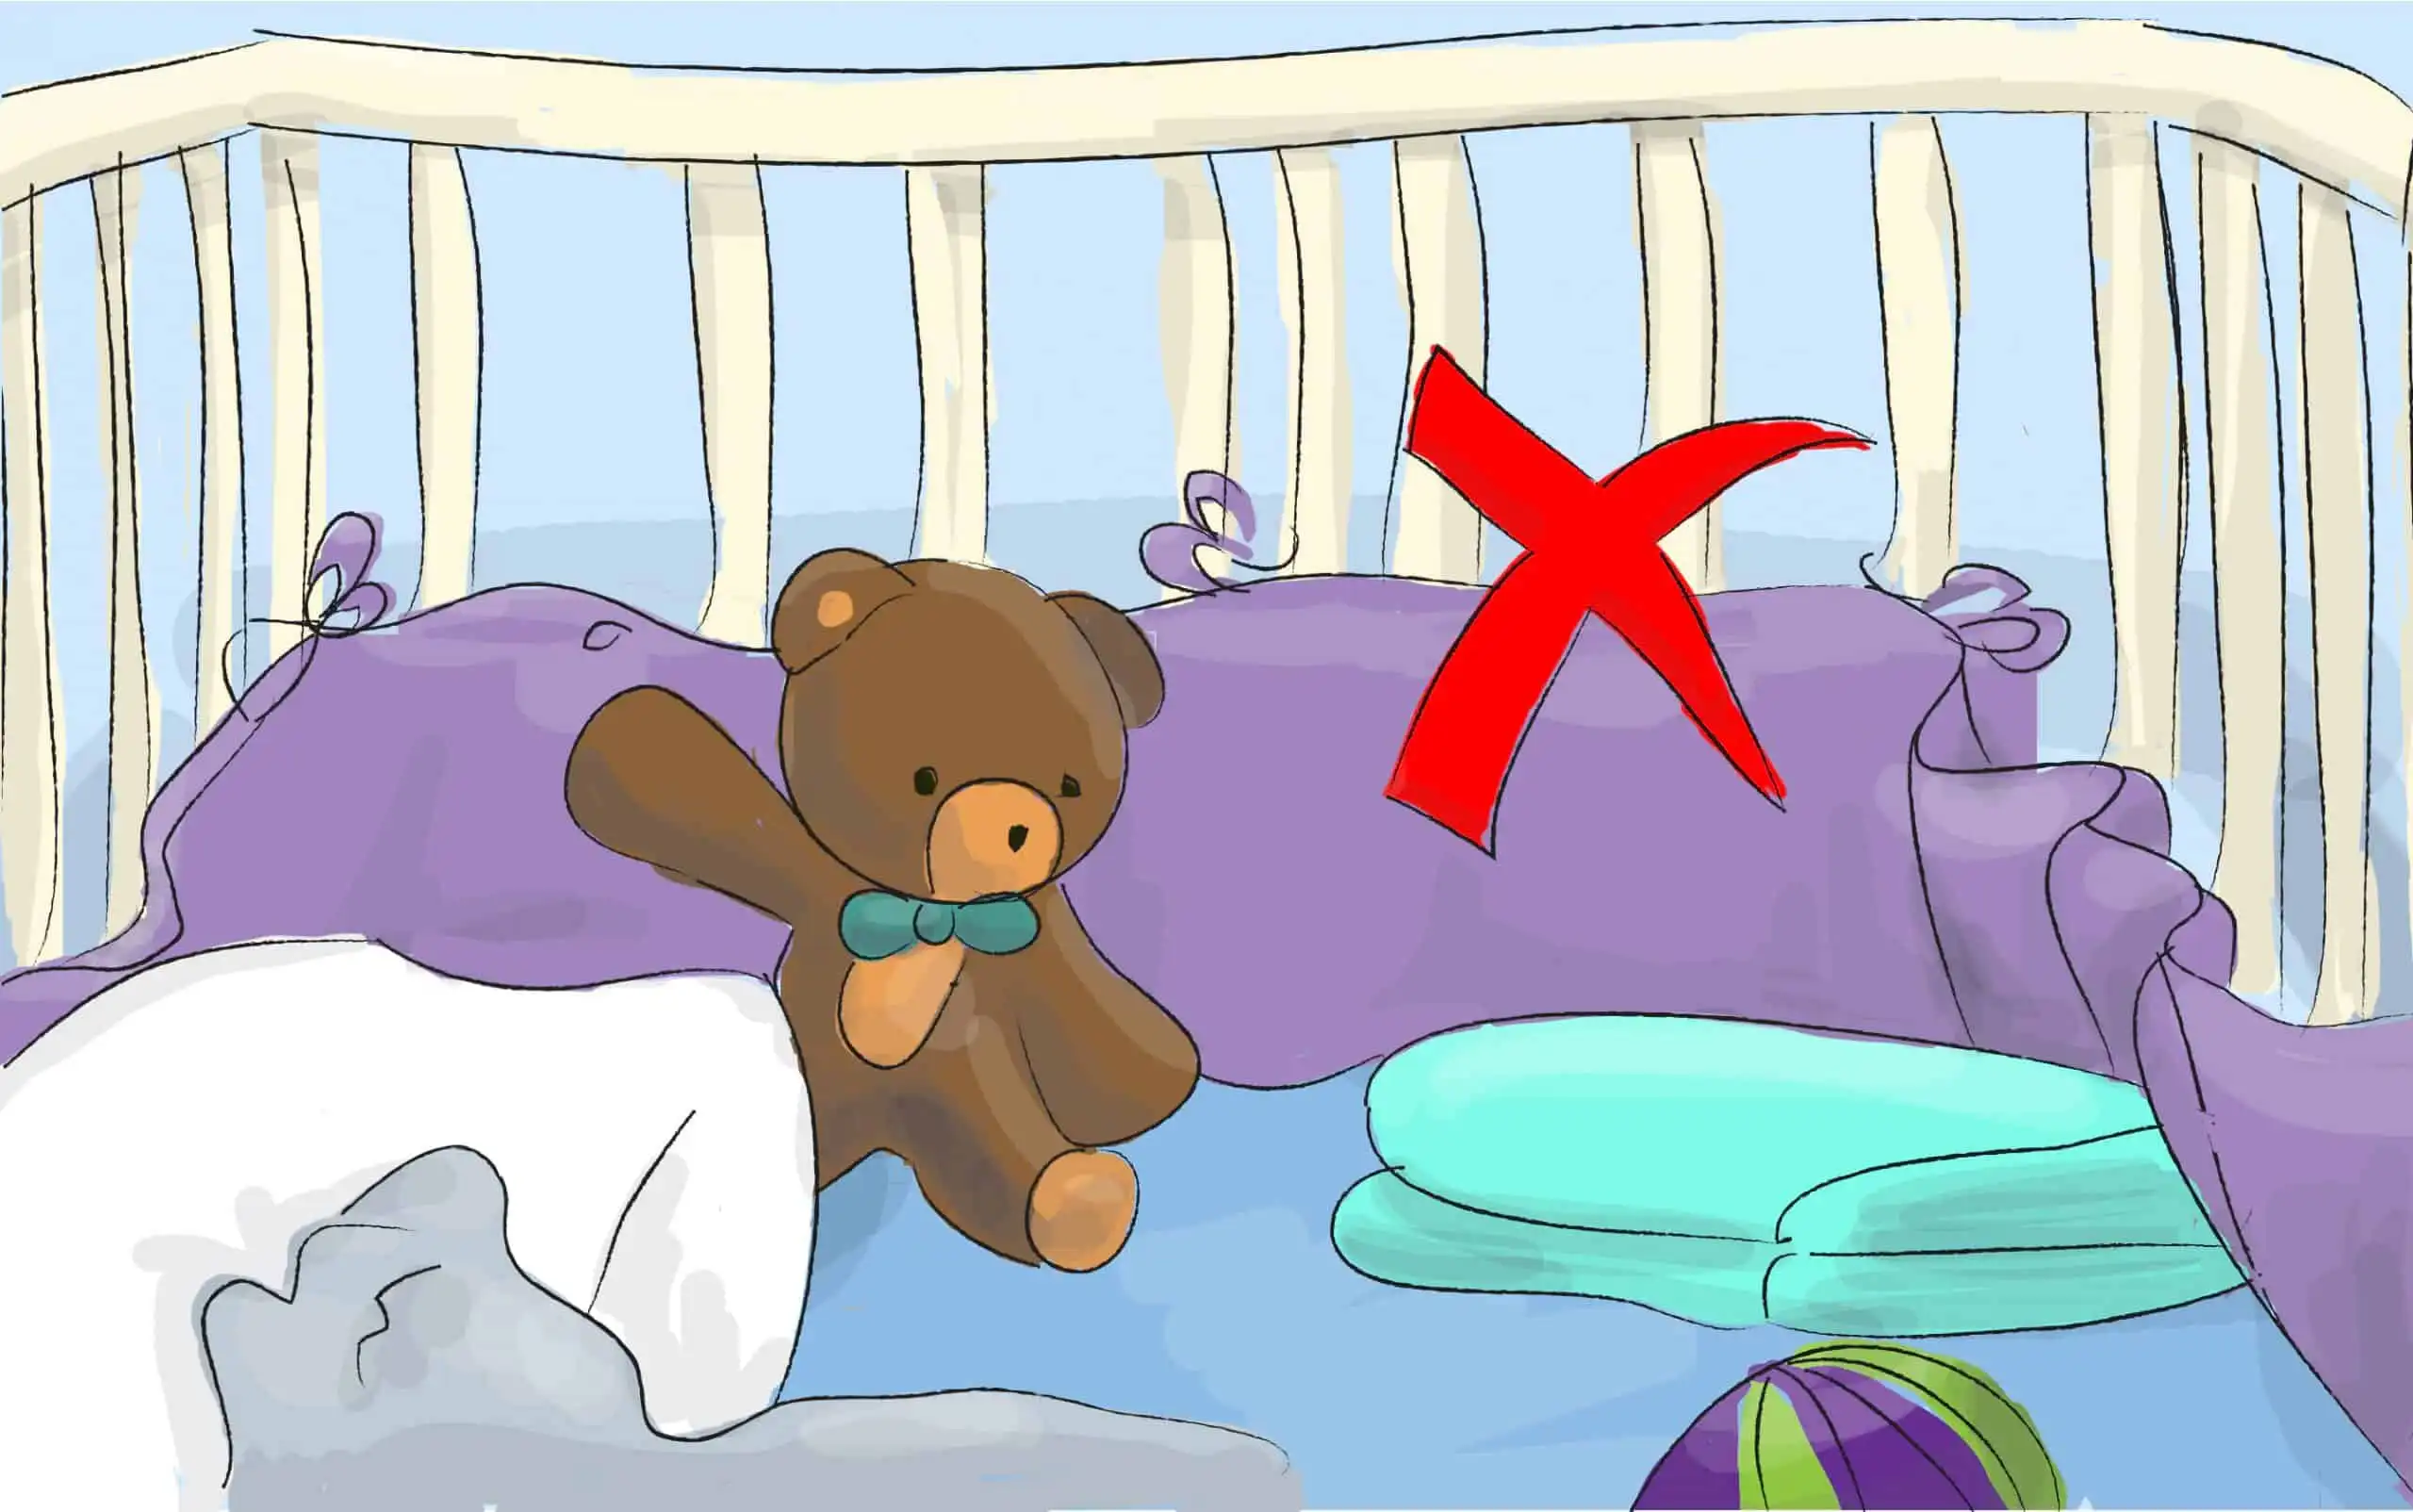 הימנעו מלהכניס למיטת התינוק שמיכות, כריות, בובות, מגן ראש וכל דבר שעלול לכסות את פניו של התינוק במהלך השינה